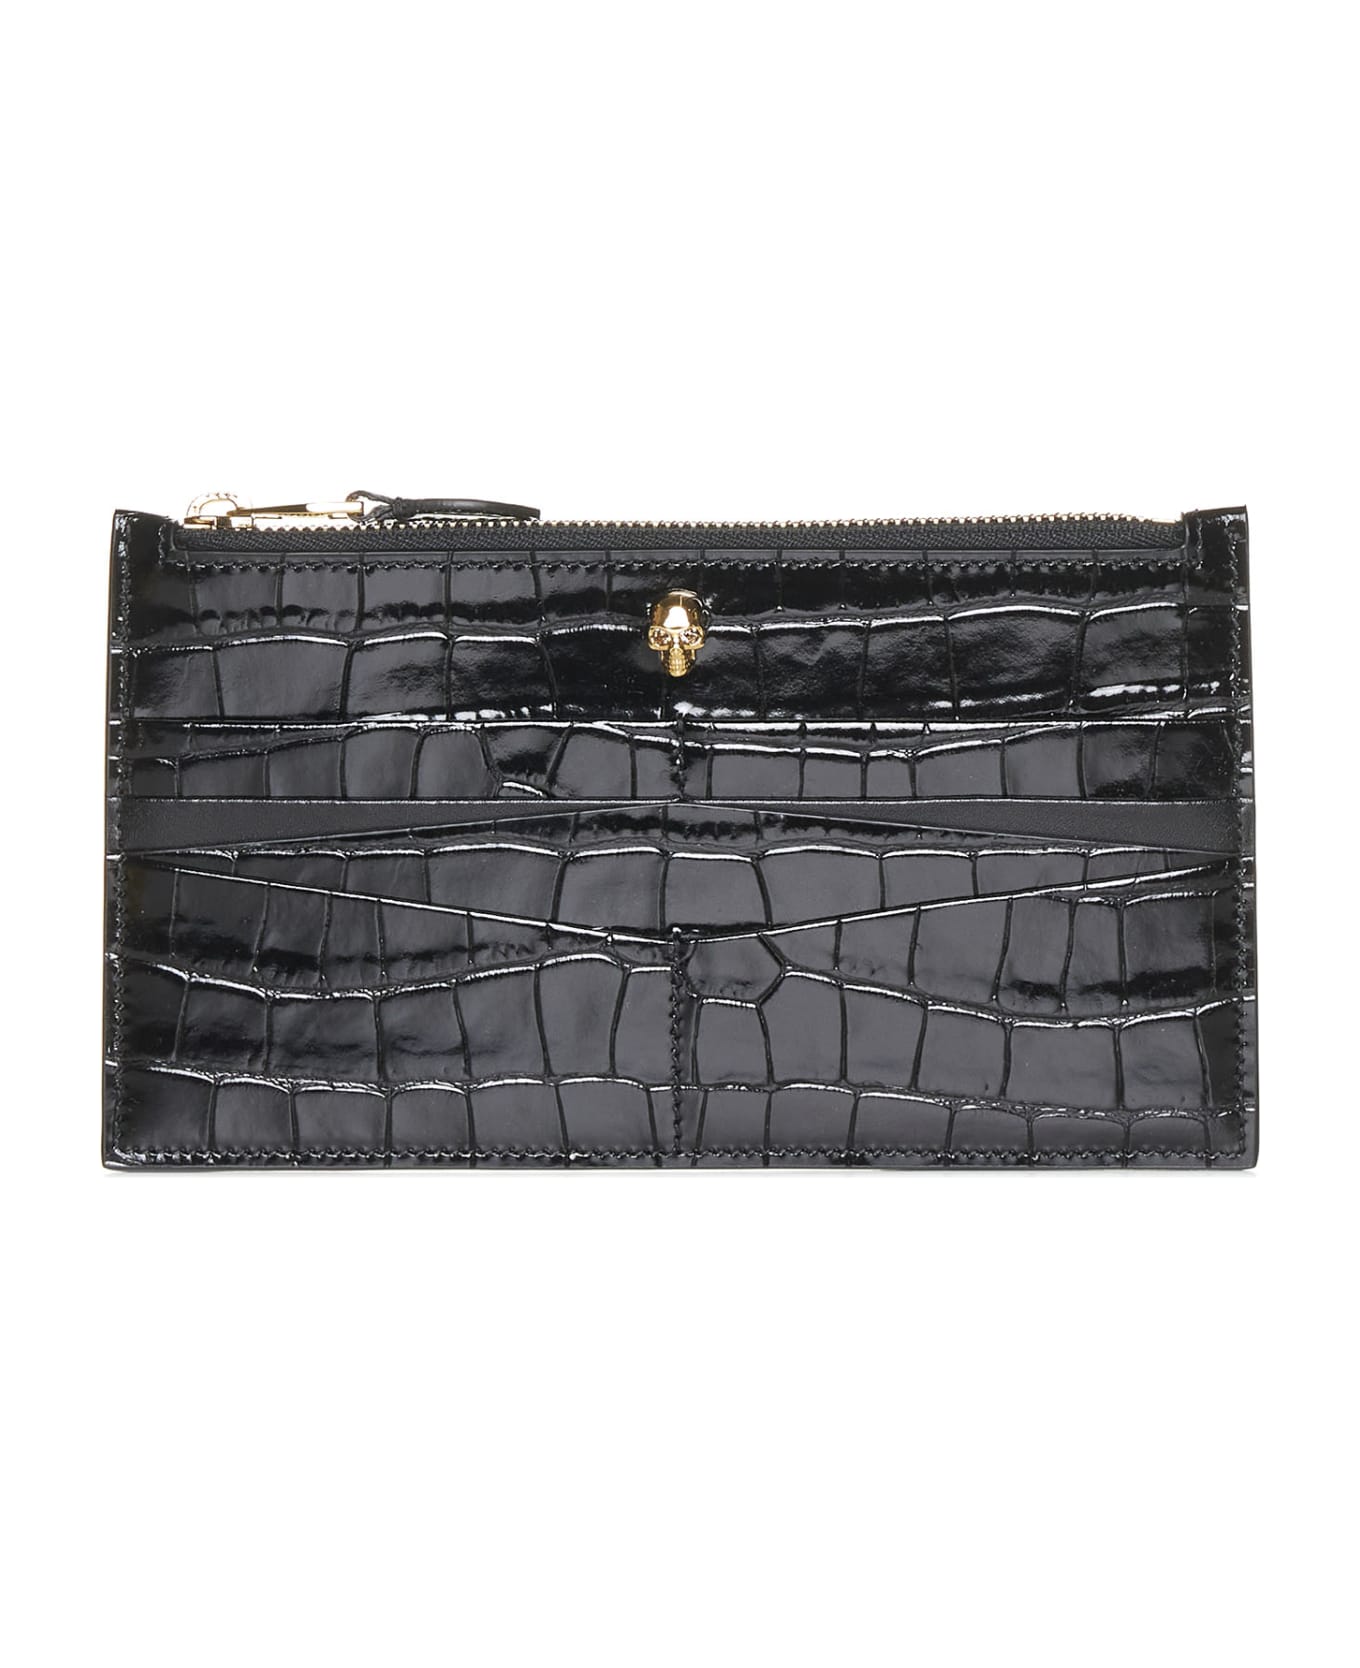 Alexander McQueen Croco Embossed Flat Zip Wallet - Black 財布